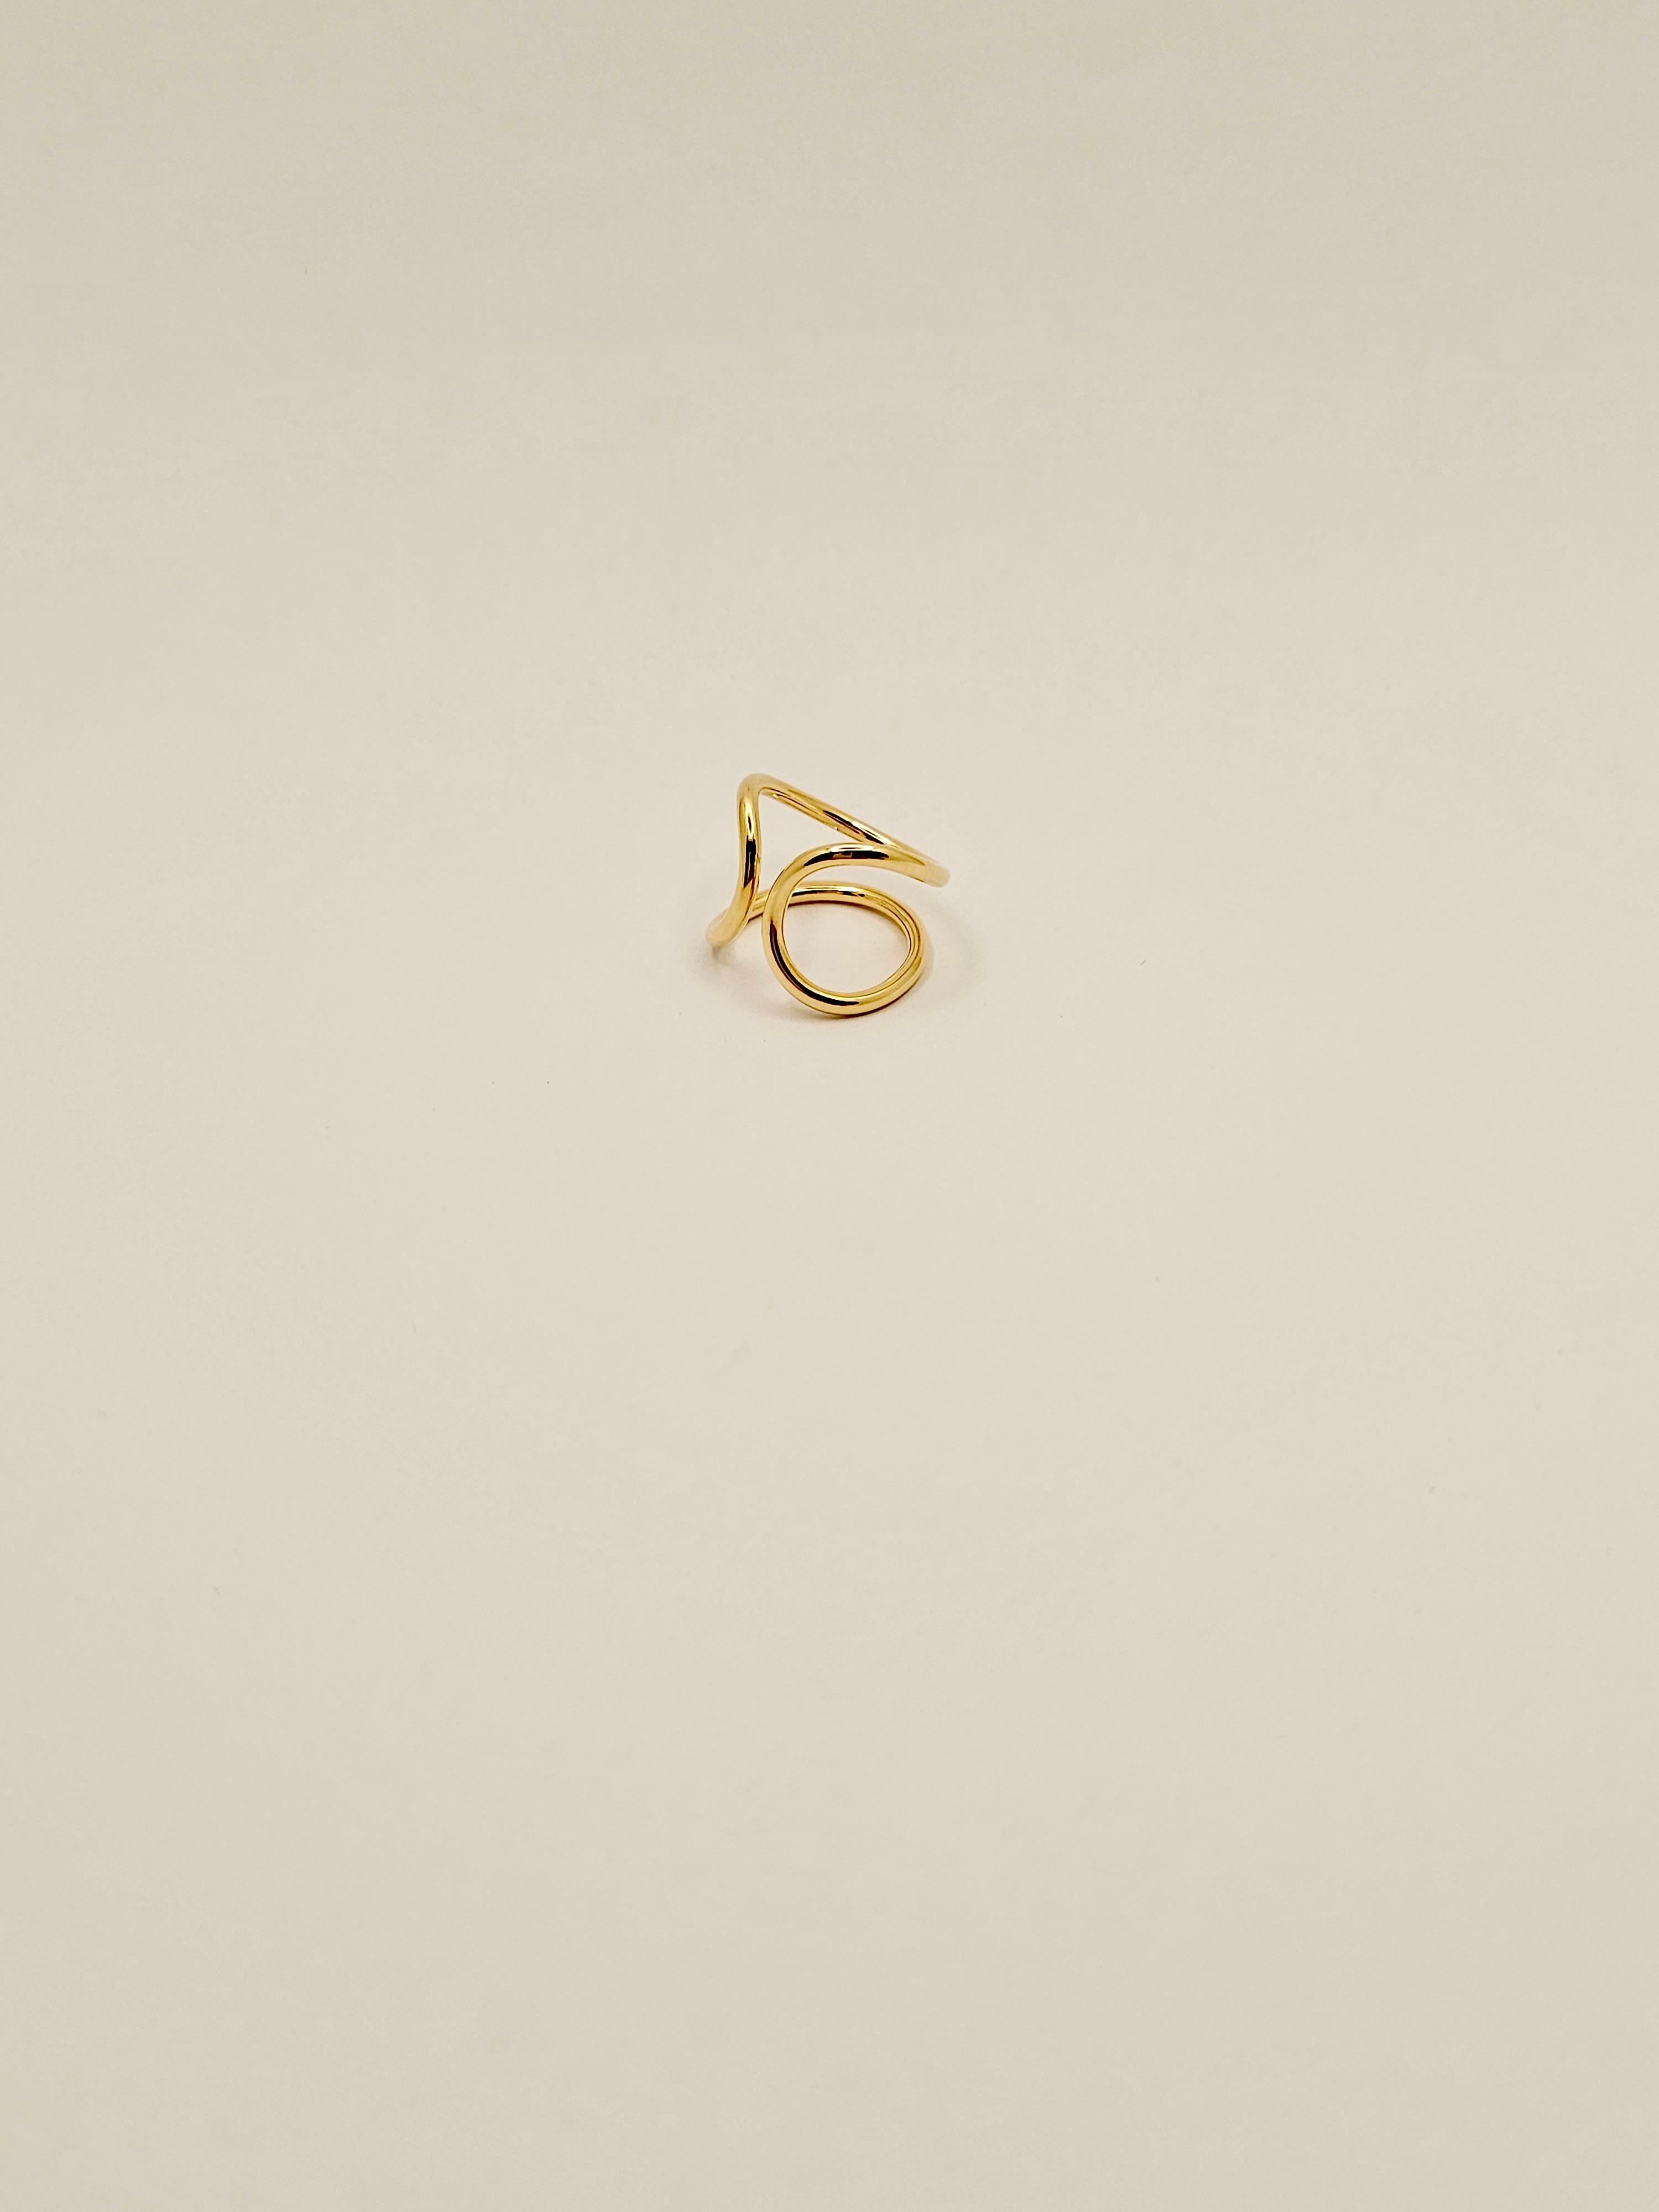 Un anello dal design contemporaneo in oro giallo, massiccio, 18 Kt dal peso di 7.35 grammi.
Questo anello è realizzato da uno spesso filo di oro continuo, che riprende l'idea di un cerchio infinito.
La sua struttura è molto robusta e questo lo rende